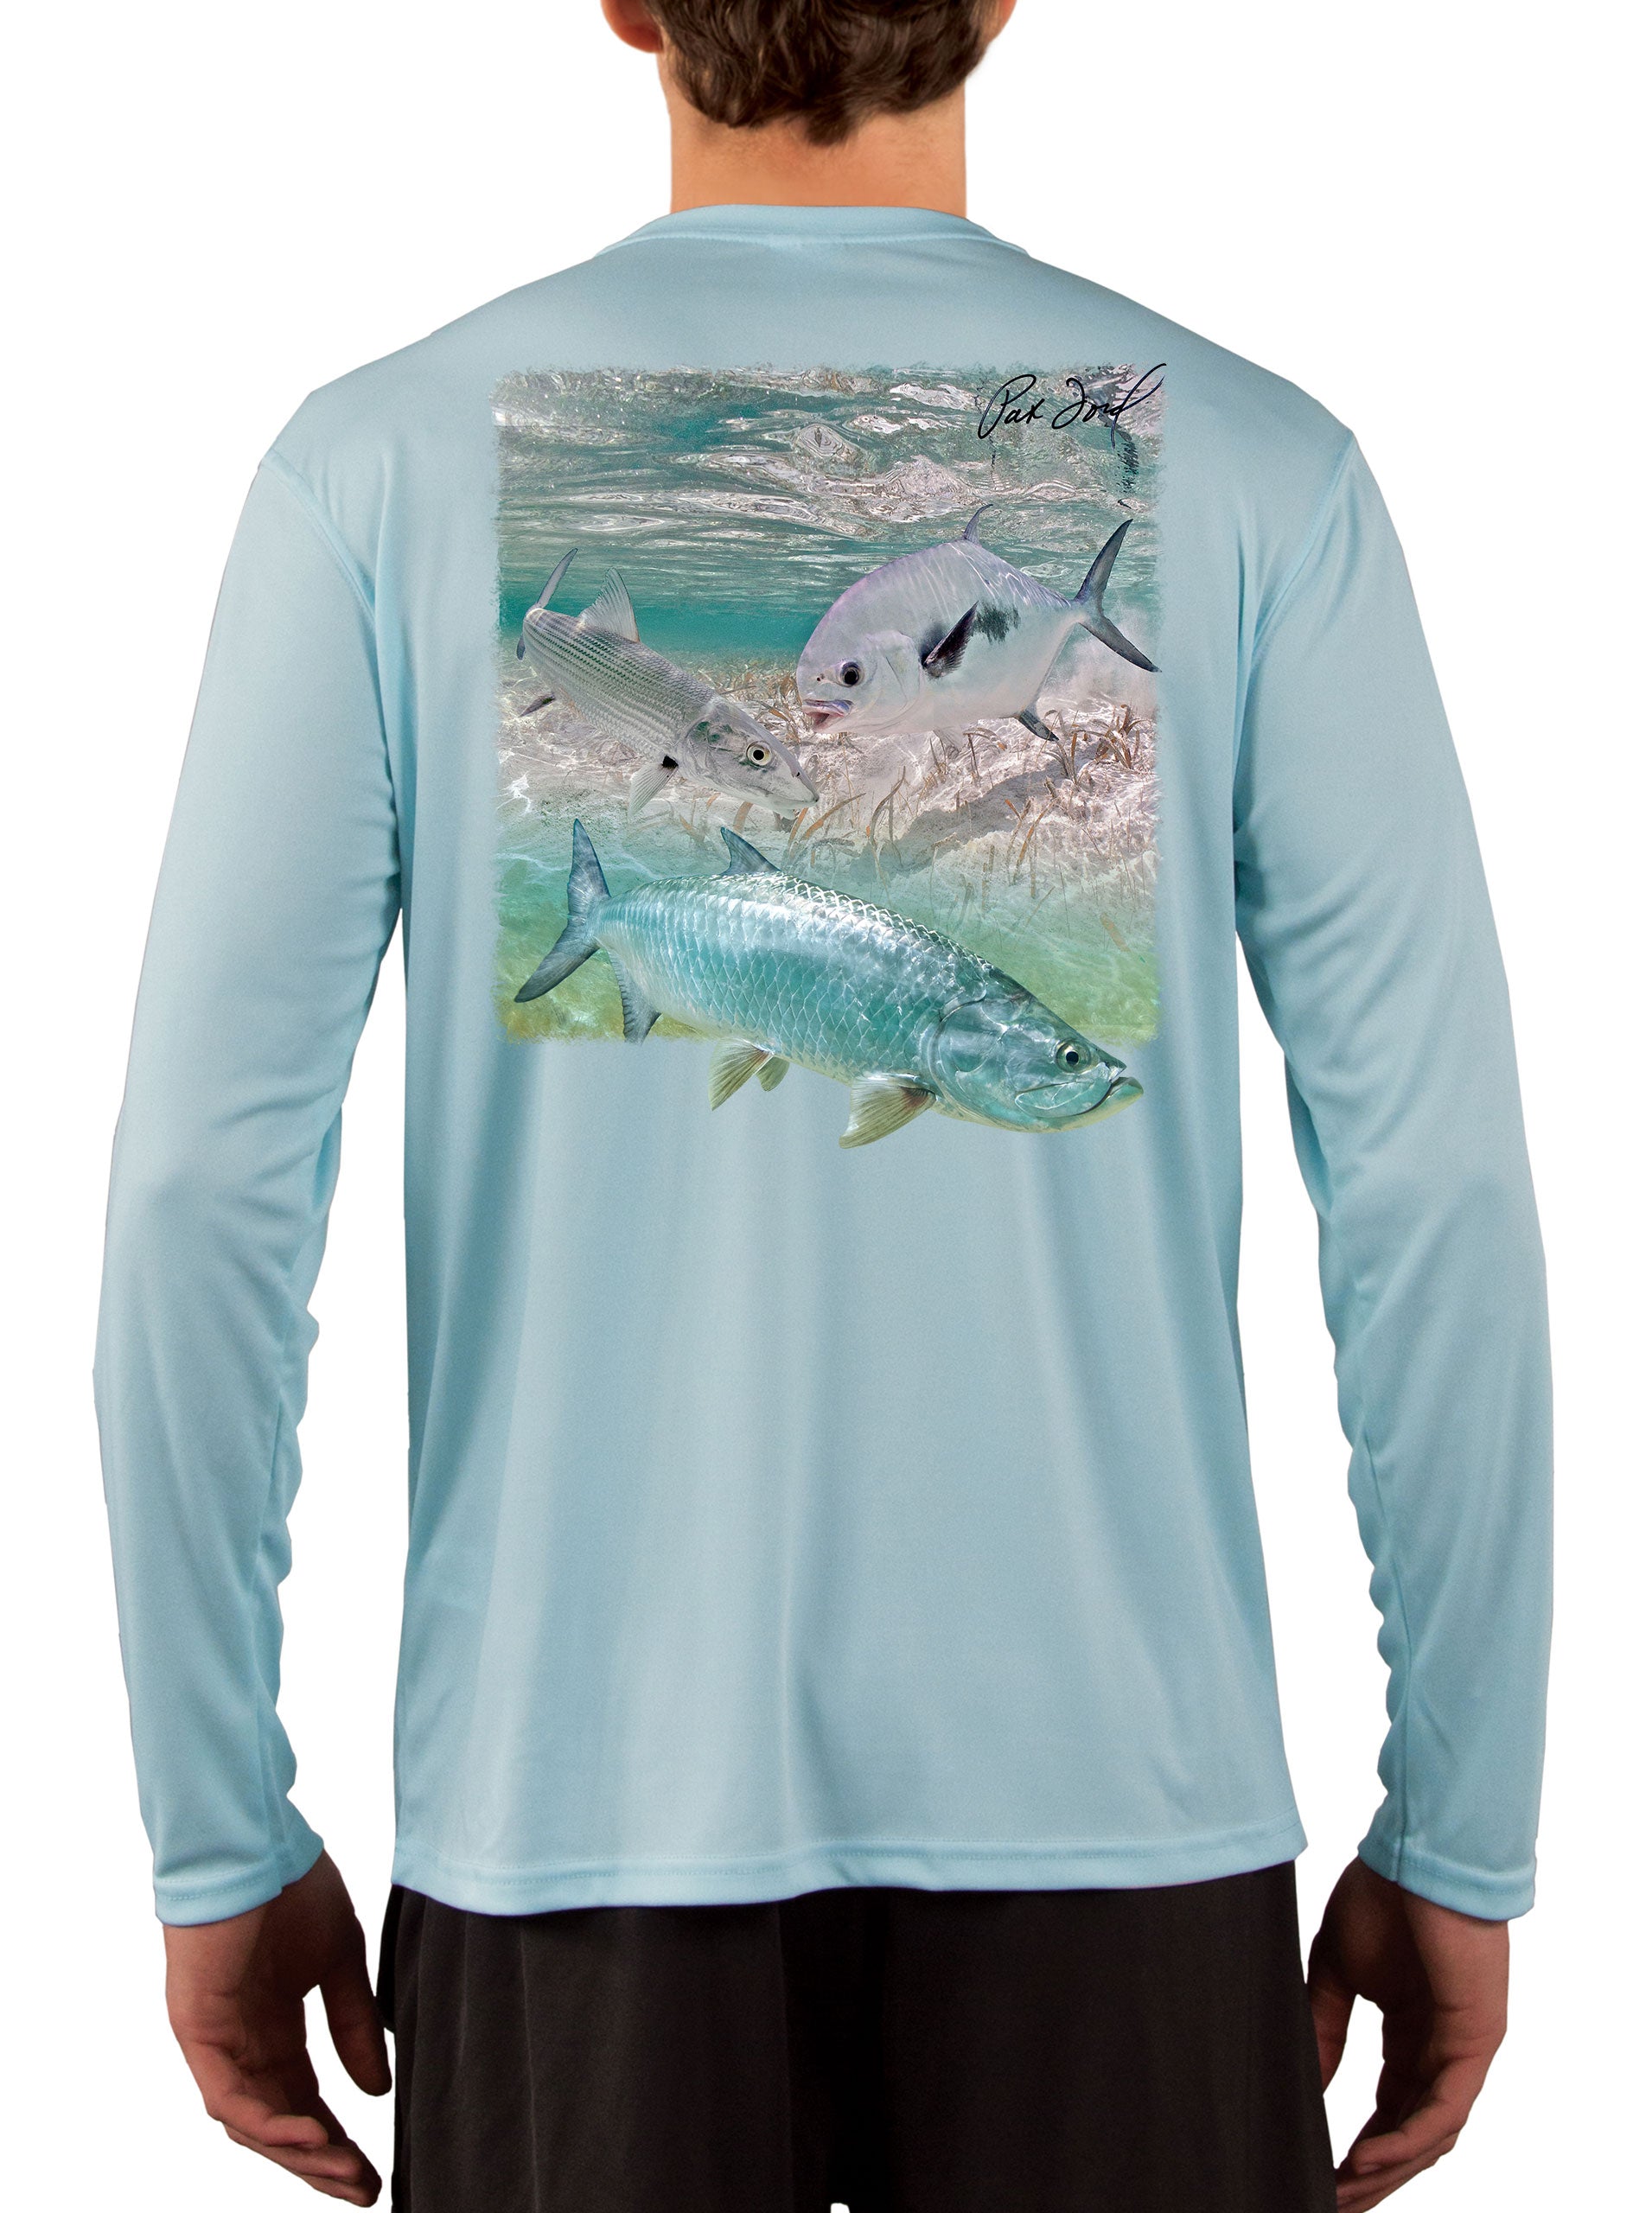 Pat Ford Key West Slam Tarpon Bonefish & Permit Fishing Shirt – Skiff Life